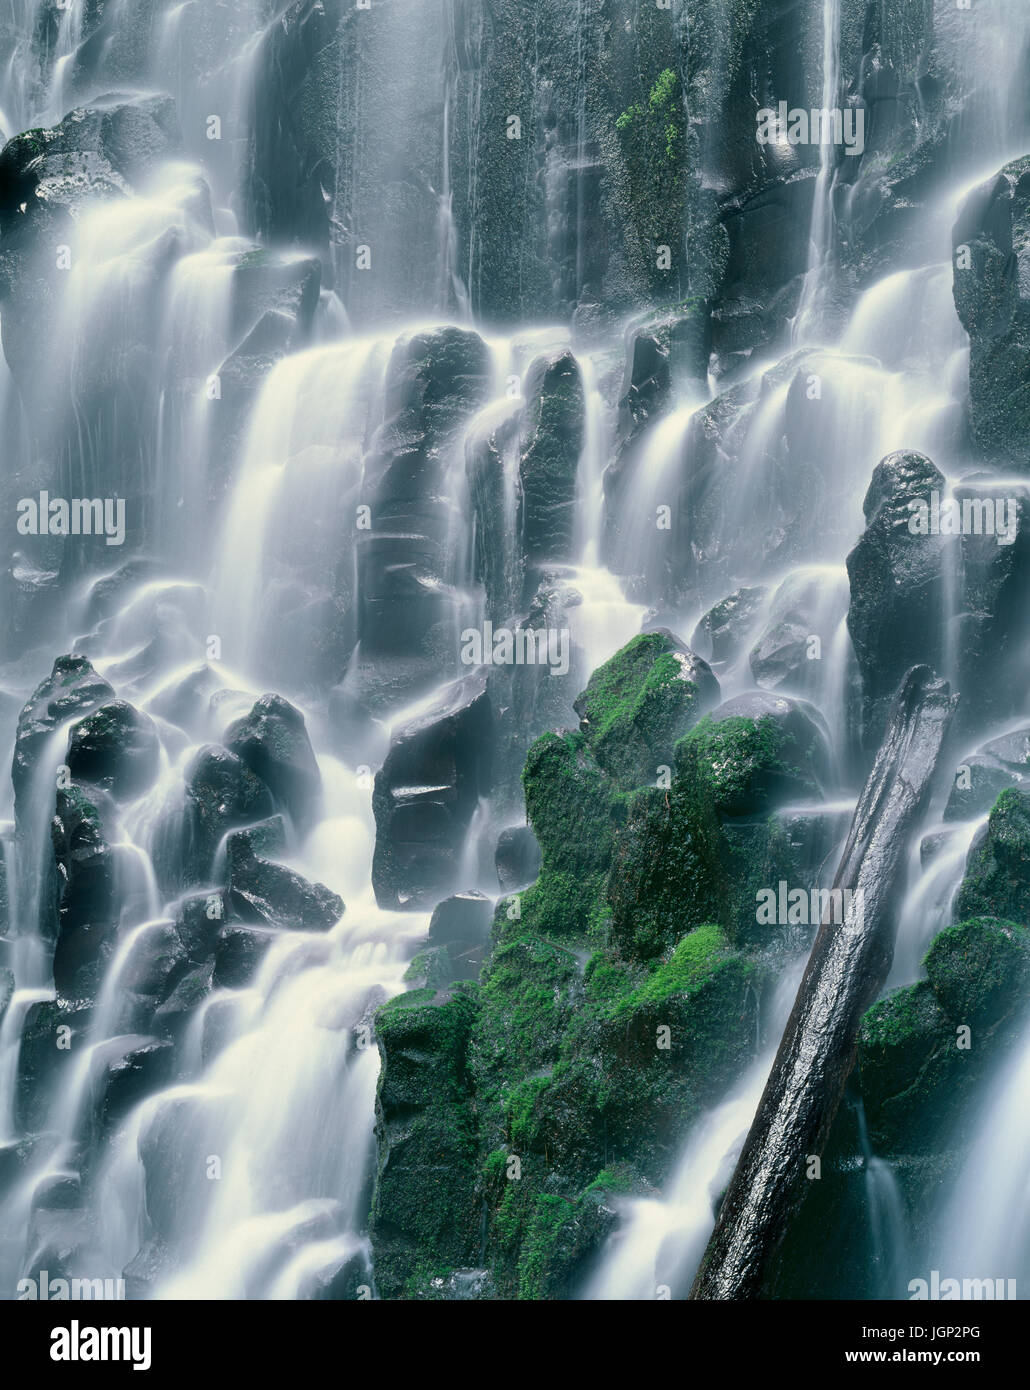 USA (Oregon), Mount Hood National Forest, Mount Hood Wilderness, Ramona Falls est formé par un petit ruisseau Tumbling sur une falaise de basalte columnaire moussu Banque D'Images